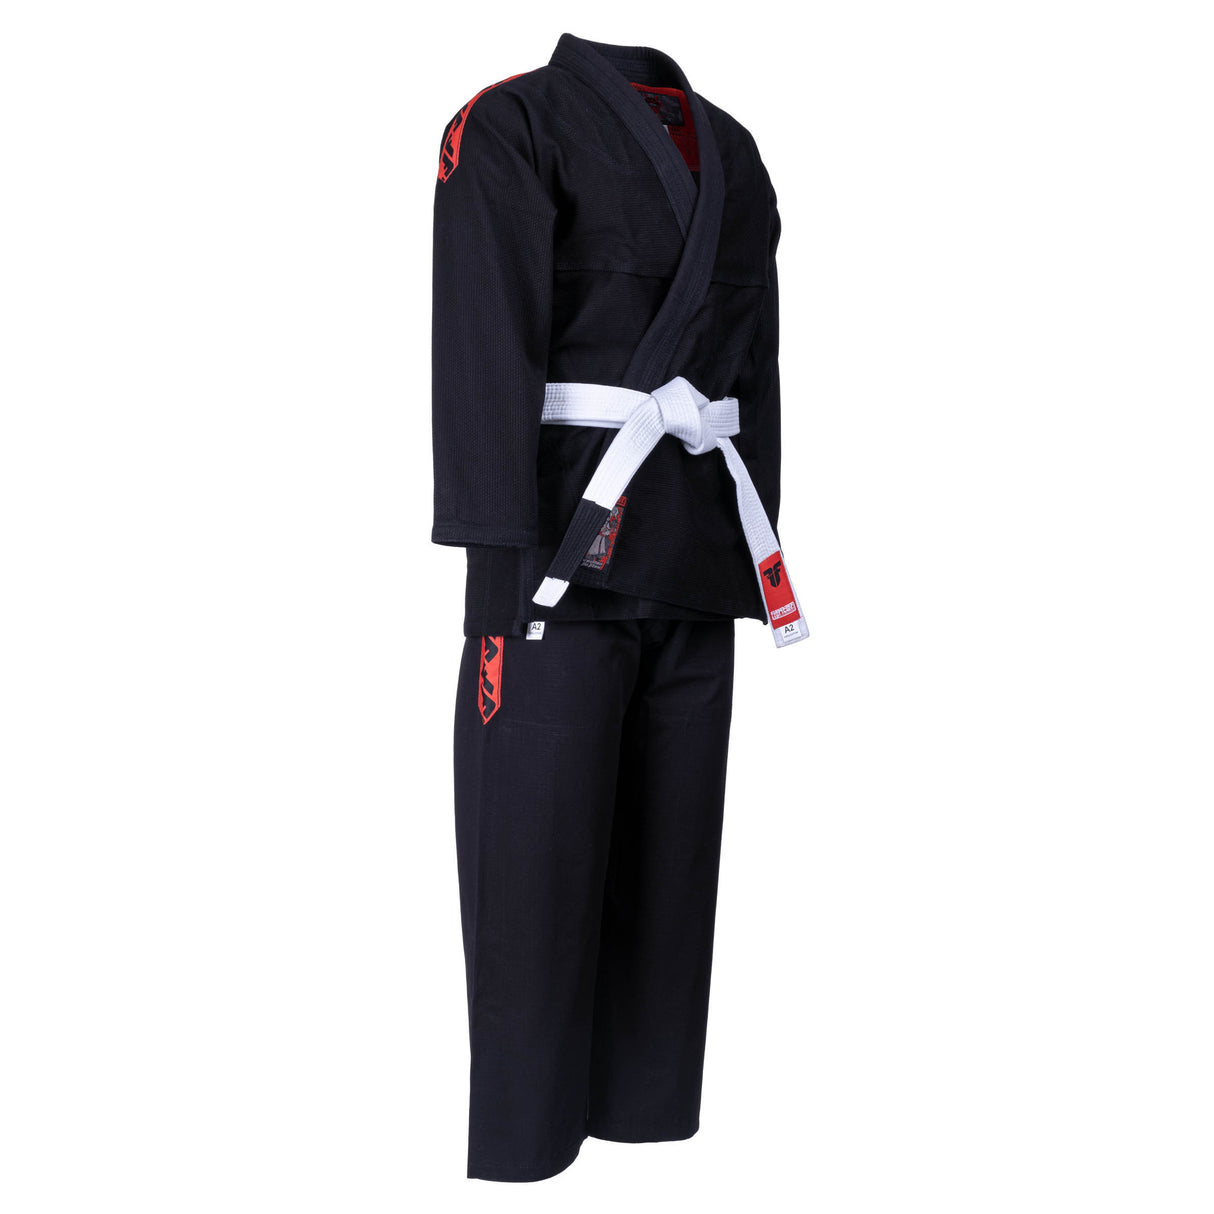 Uniforme de combat BJJ Samurai - noir, BJJBW-N01